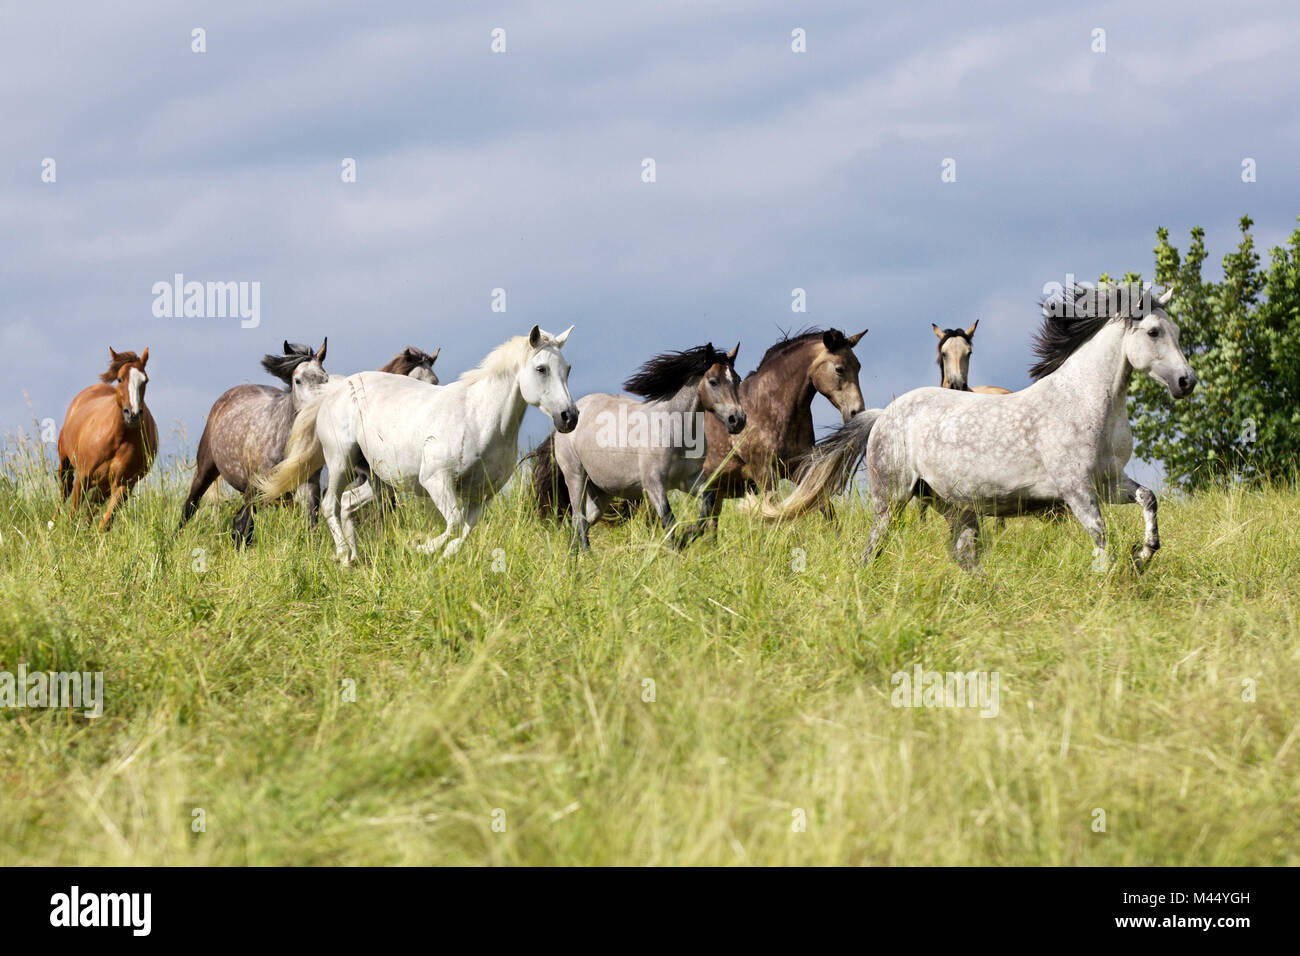 Cavalli domestici. Allevamento di cavalli con vari colori, principalmente connemaras, al galoppo attraverso l'erba. Germania Foto Stock